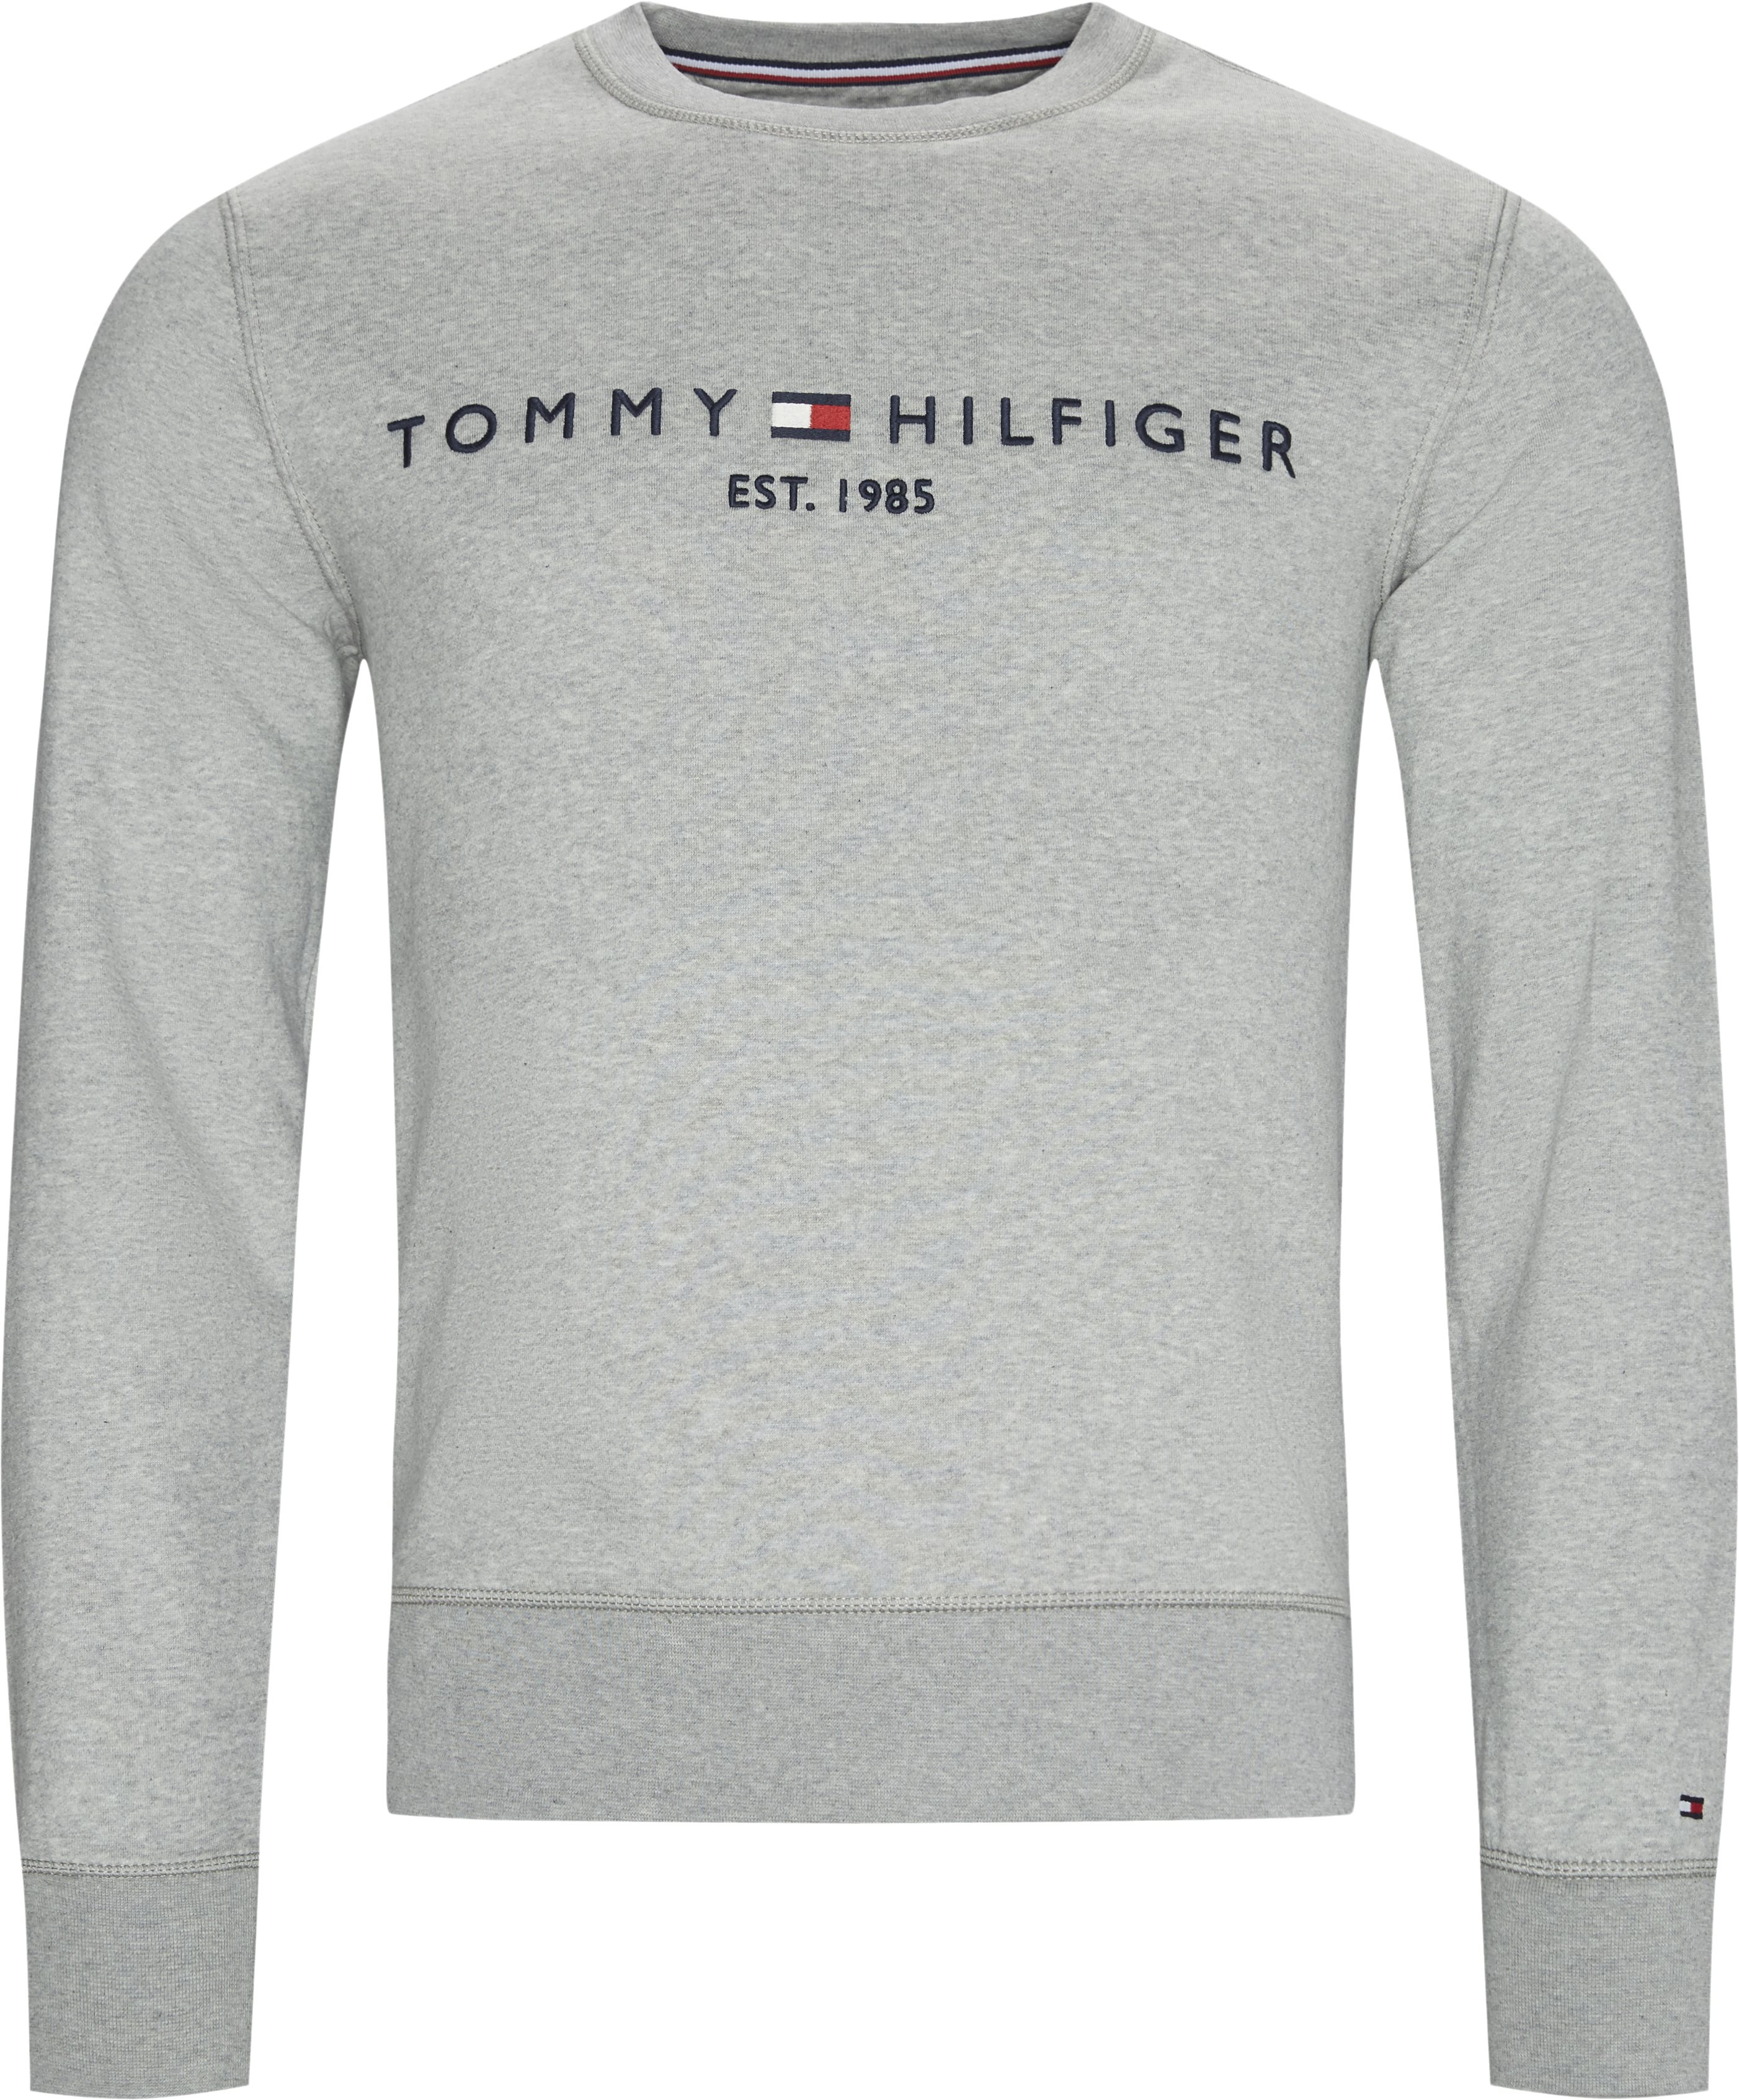 erstatte Erobre ligevægt TOMMY LOGO SWEATSHIRT Sweatshirts GRÅ fra Tommy Hilfiger 599 DKK